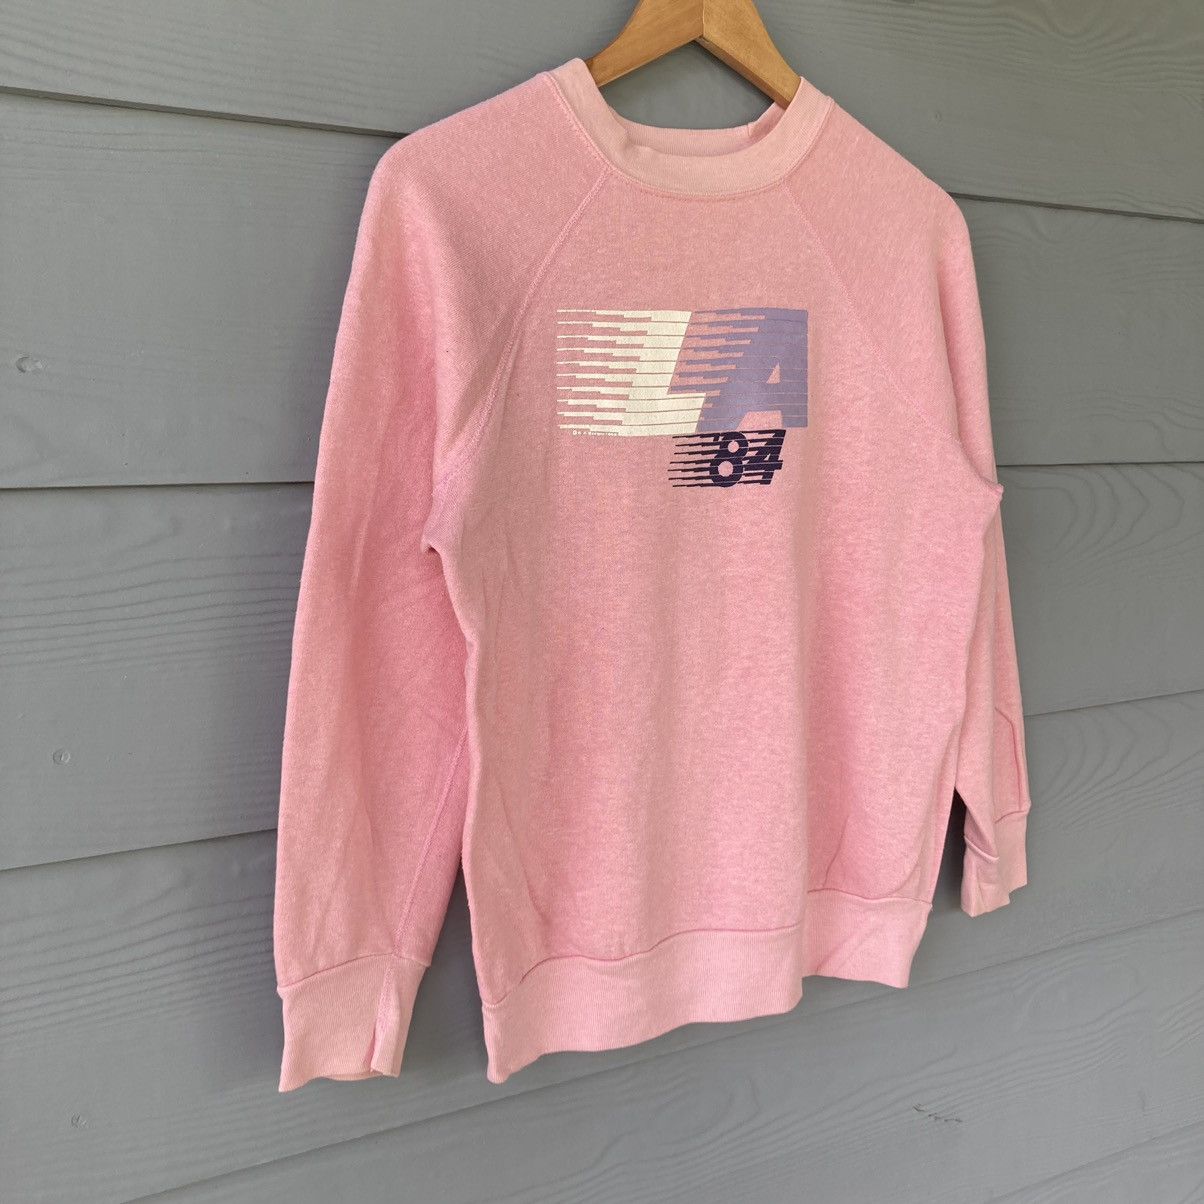 Vintage Los Angelas 84 Pink Sweatshirt - 2